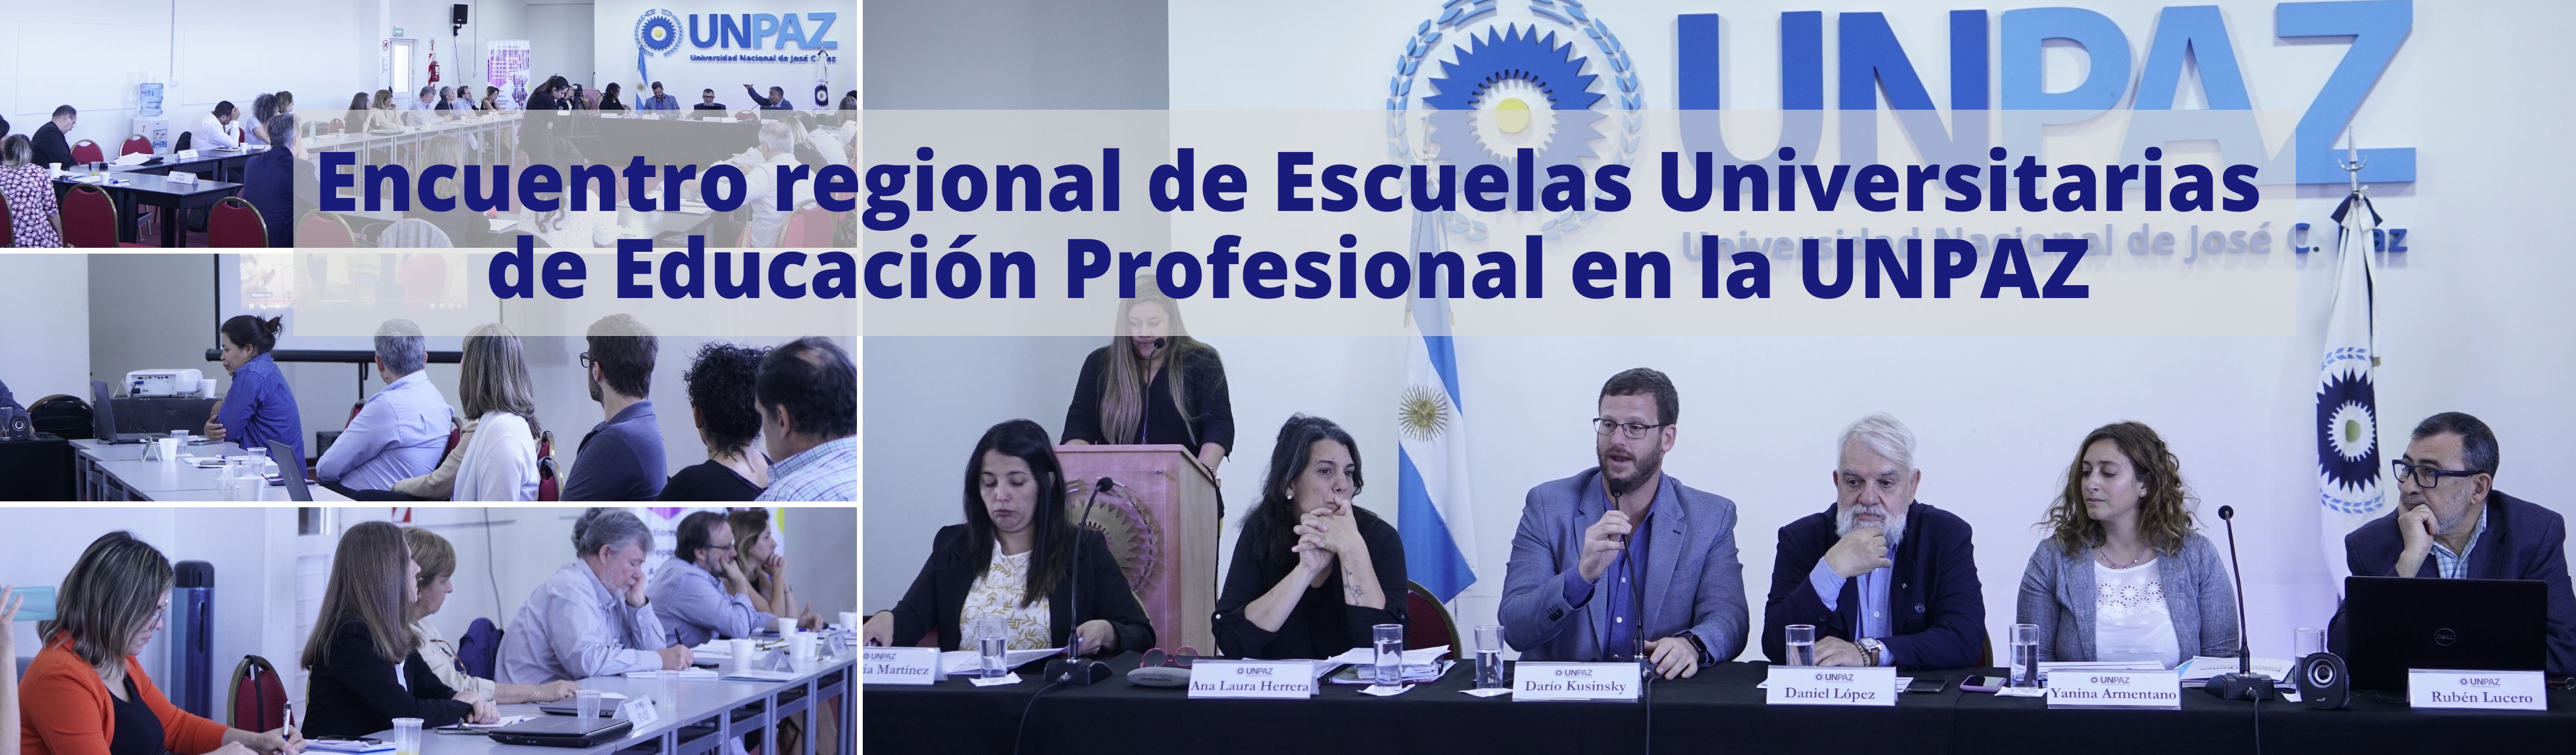 Encuentro regional de Escuelas  Universitarias de Educación Profesional en la UNPAZ